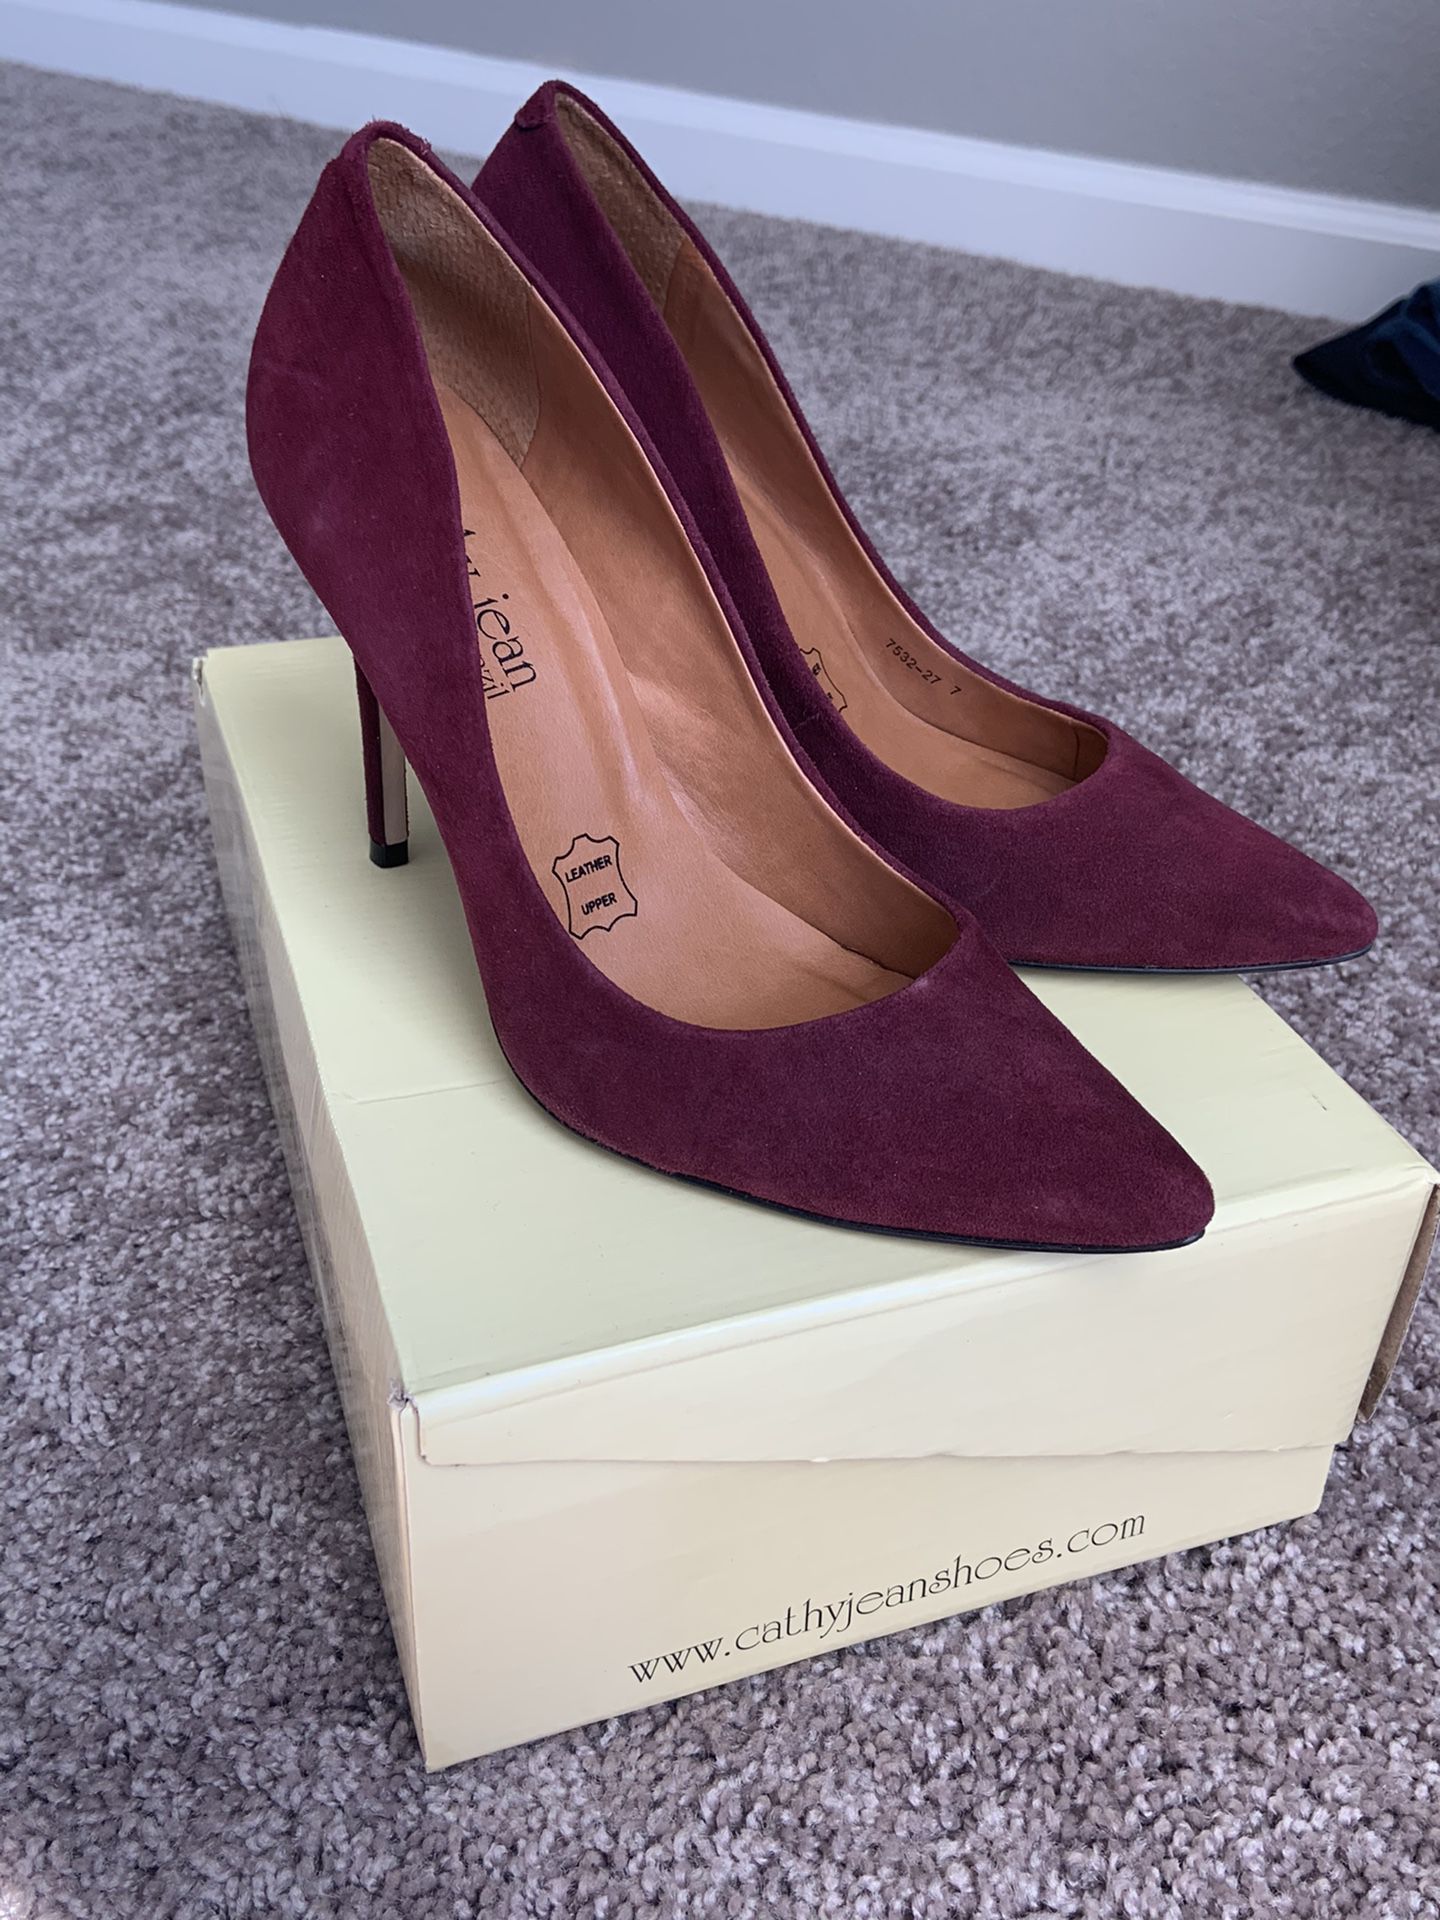 Cathy Jean burgundy heels